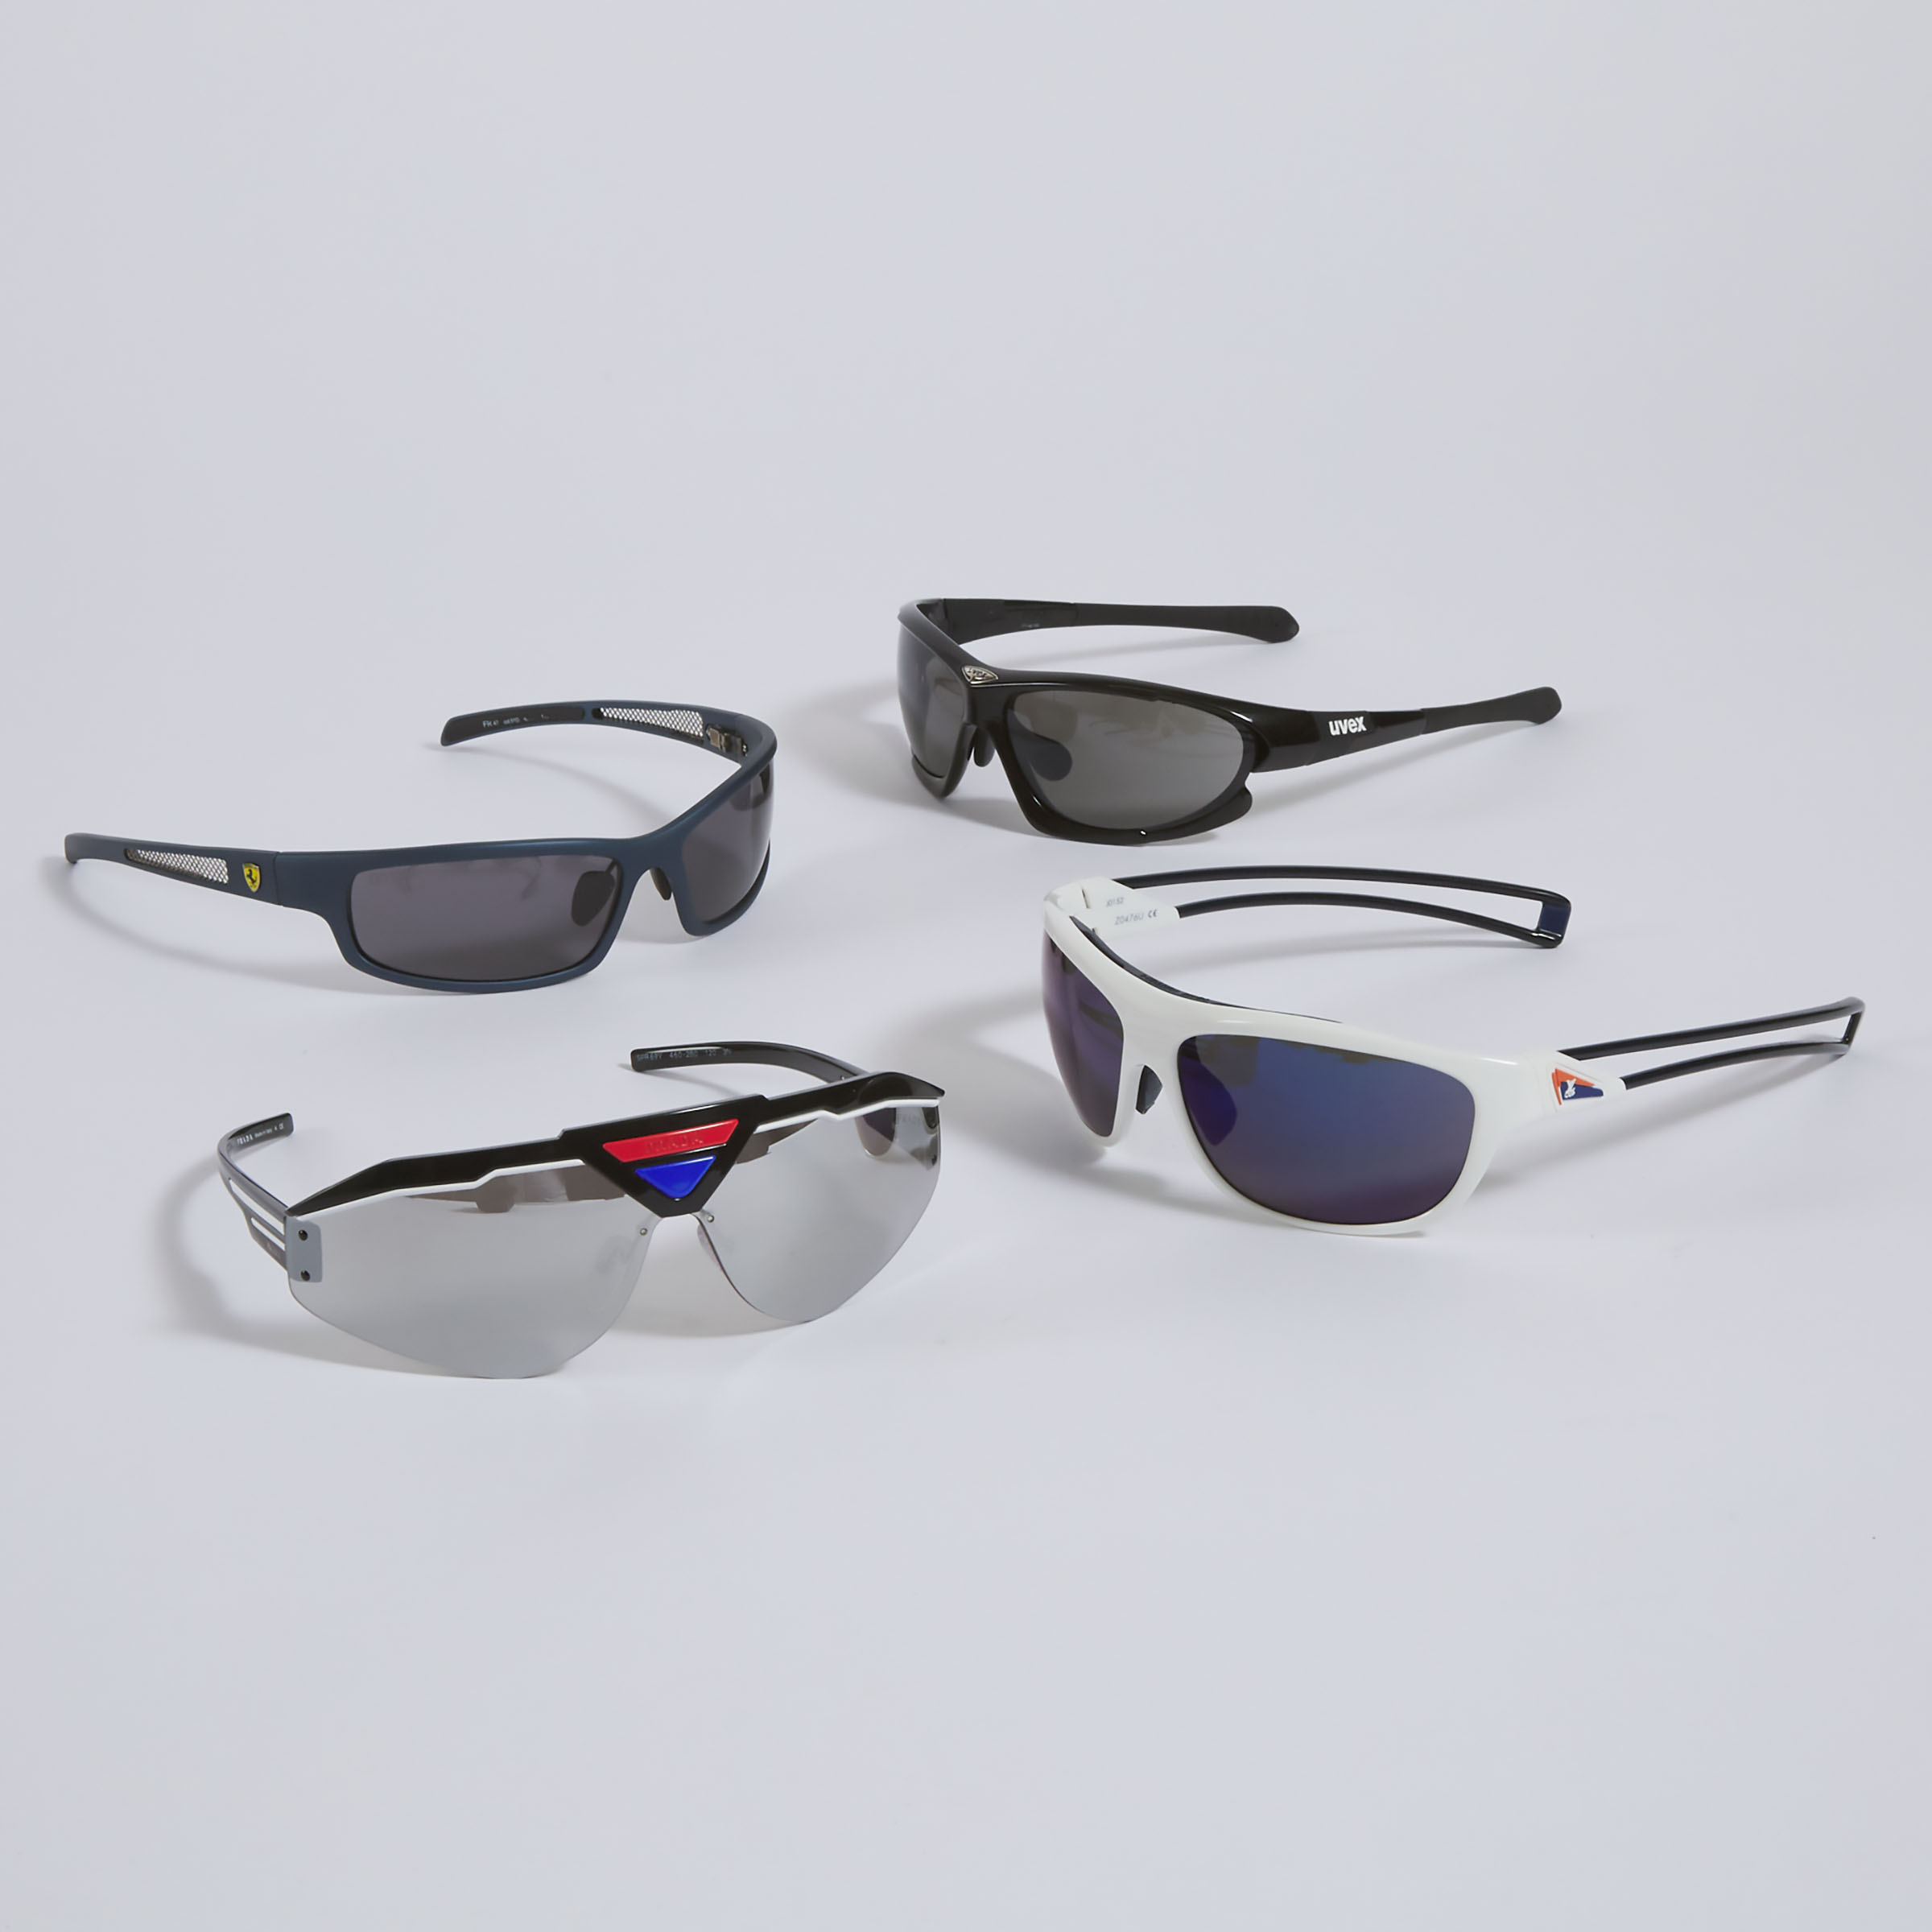 4 Pairs Of Designer Sunglasses